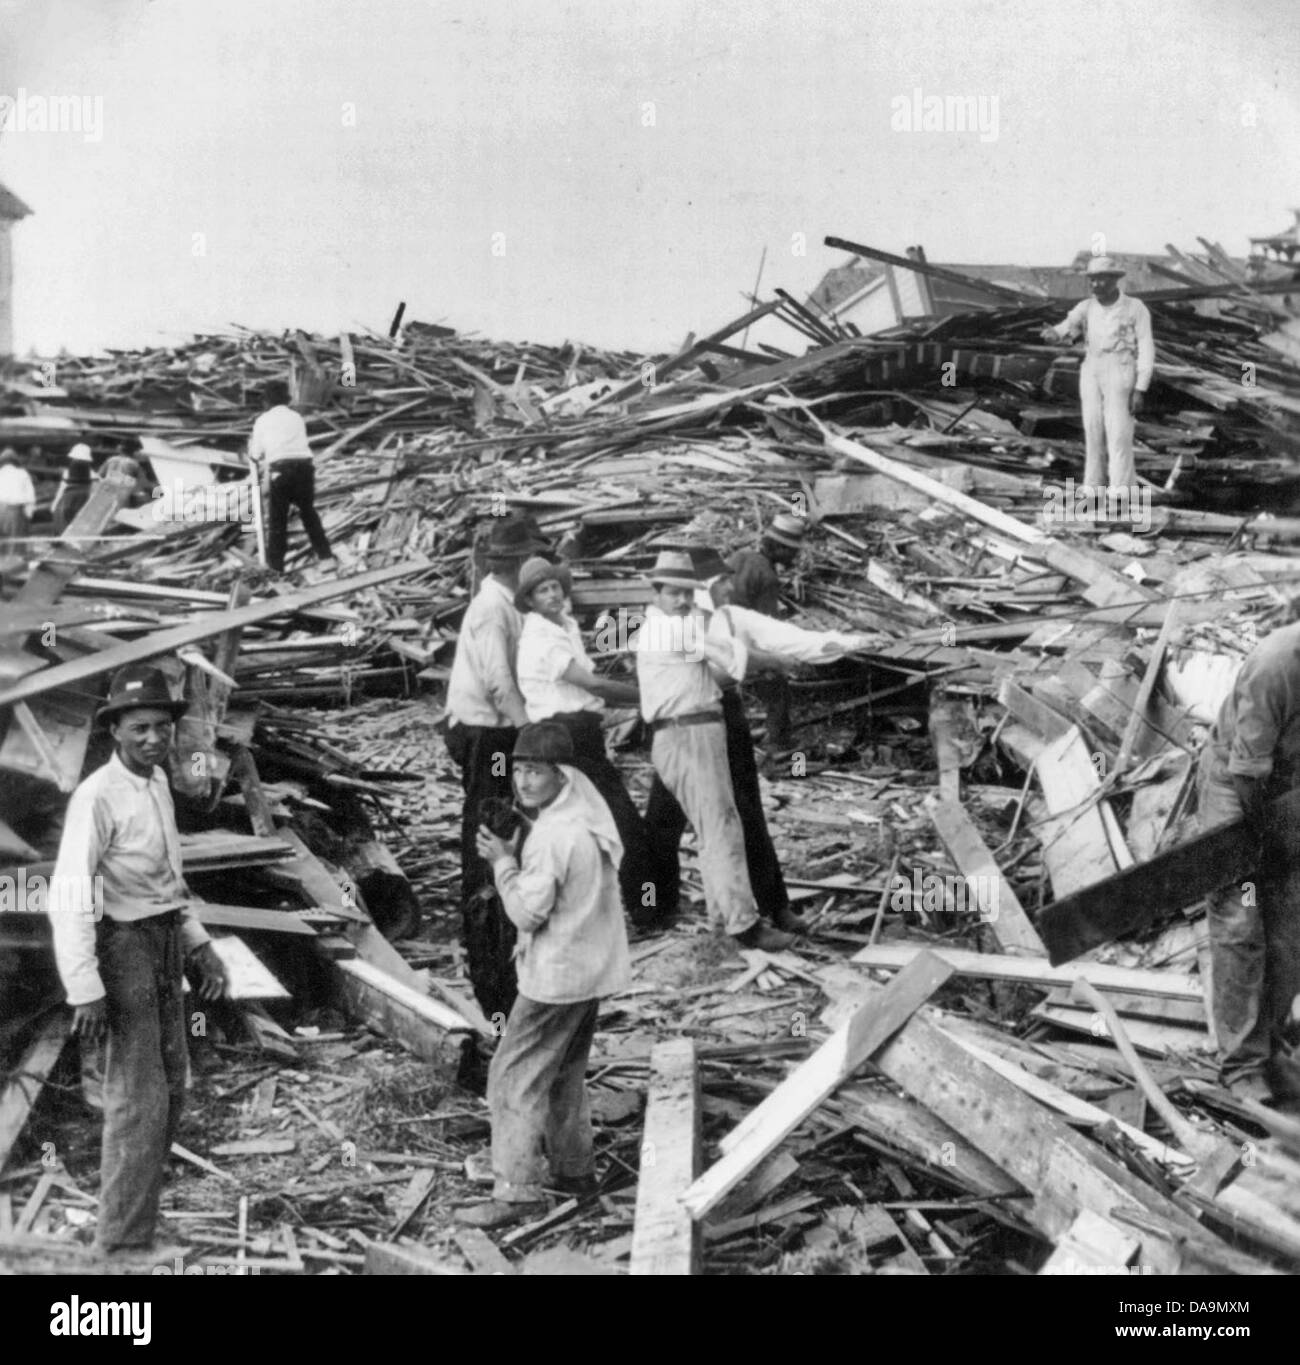 Digging though the wreckage after the Hurricane - Galveston, Texas, circa 1900 Stock Photo